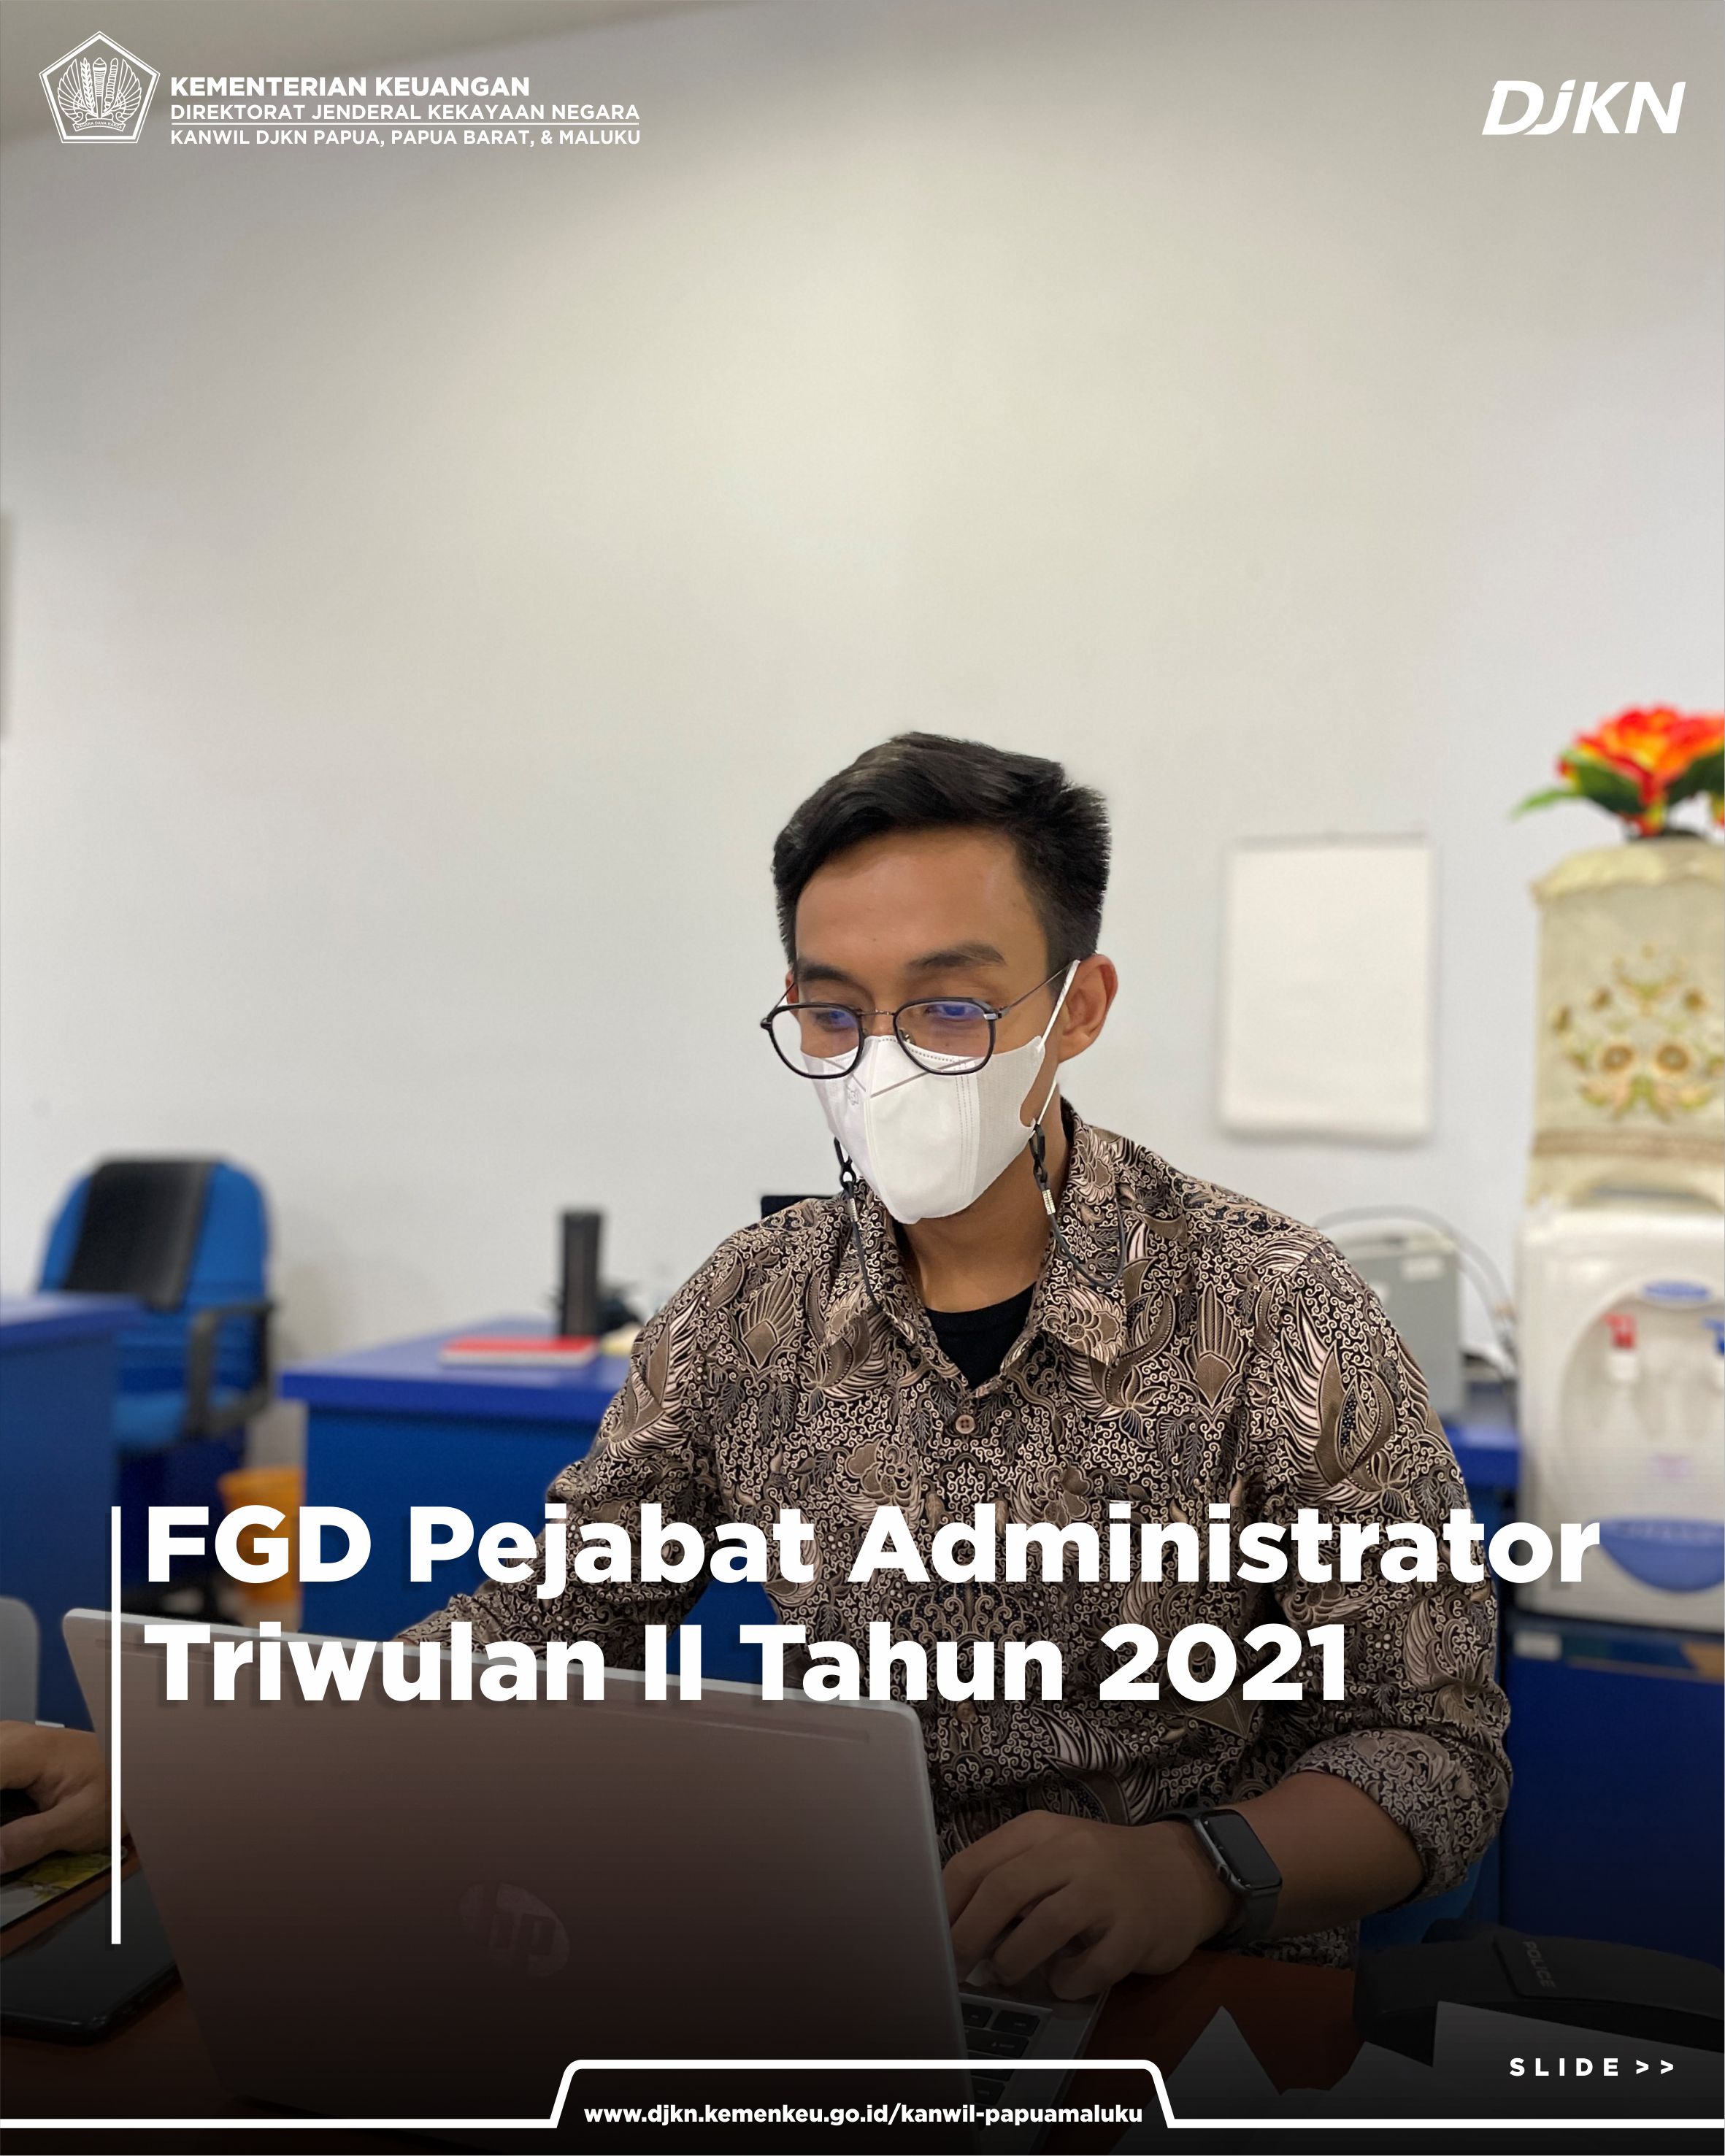 FGD Pejabat Administrator Triwulan II Tahun 2021 Kanwil DJKN Papabaruku